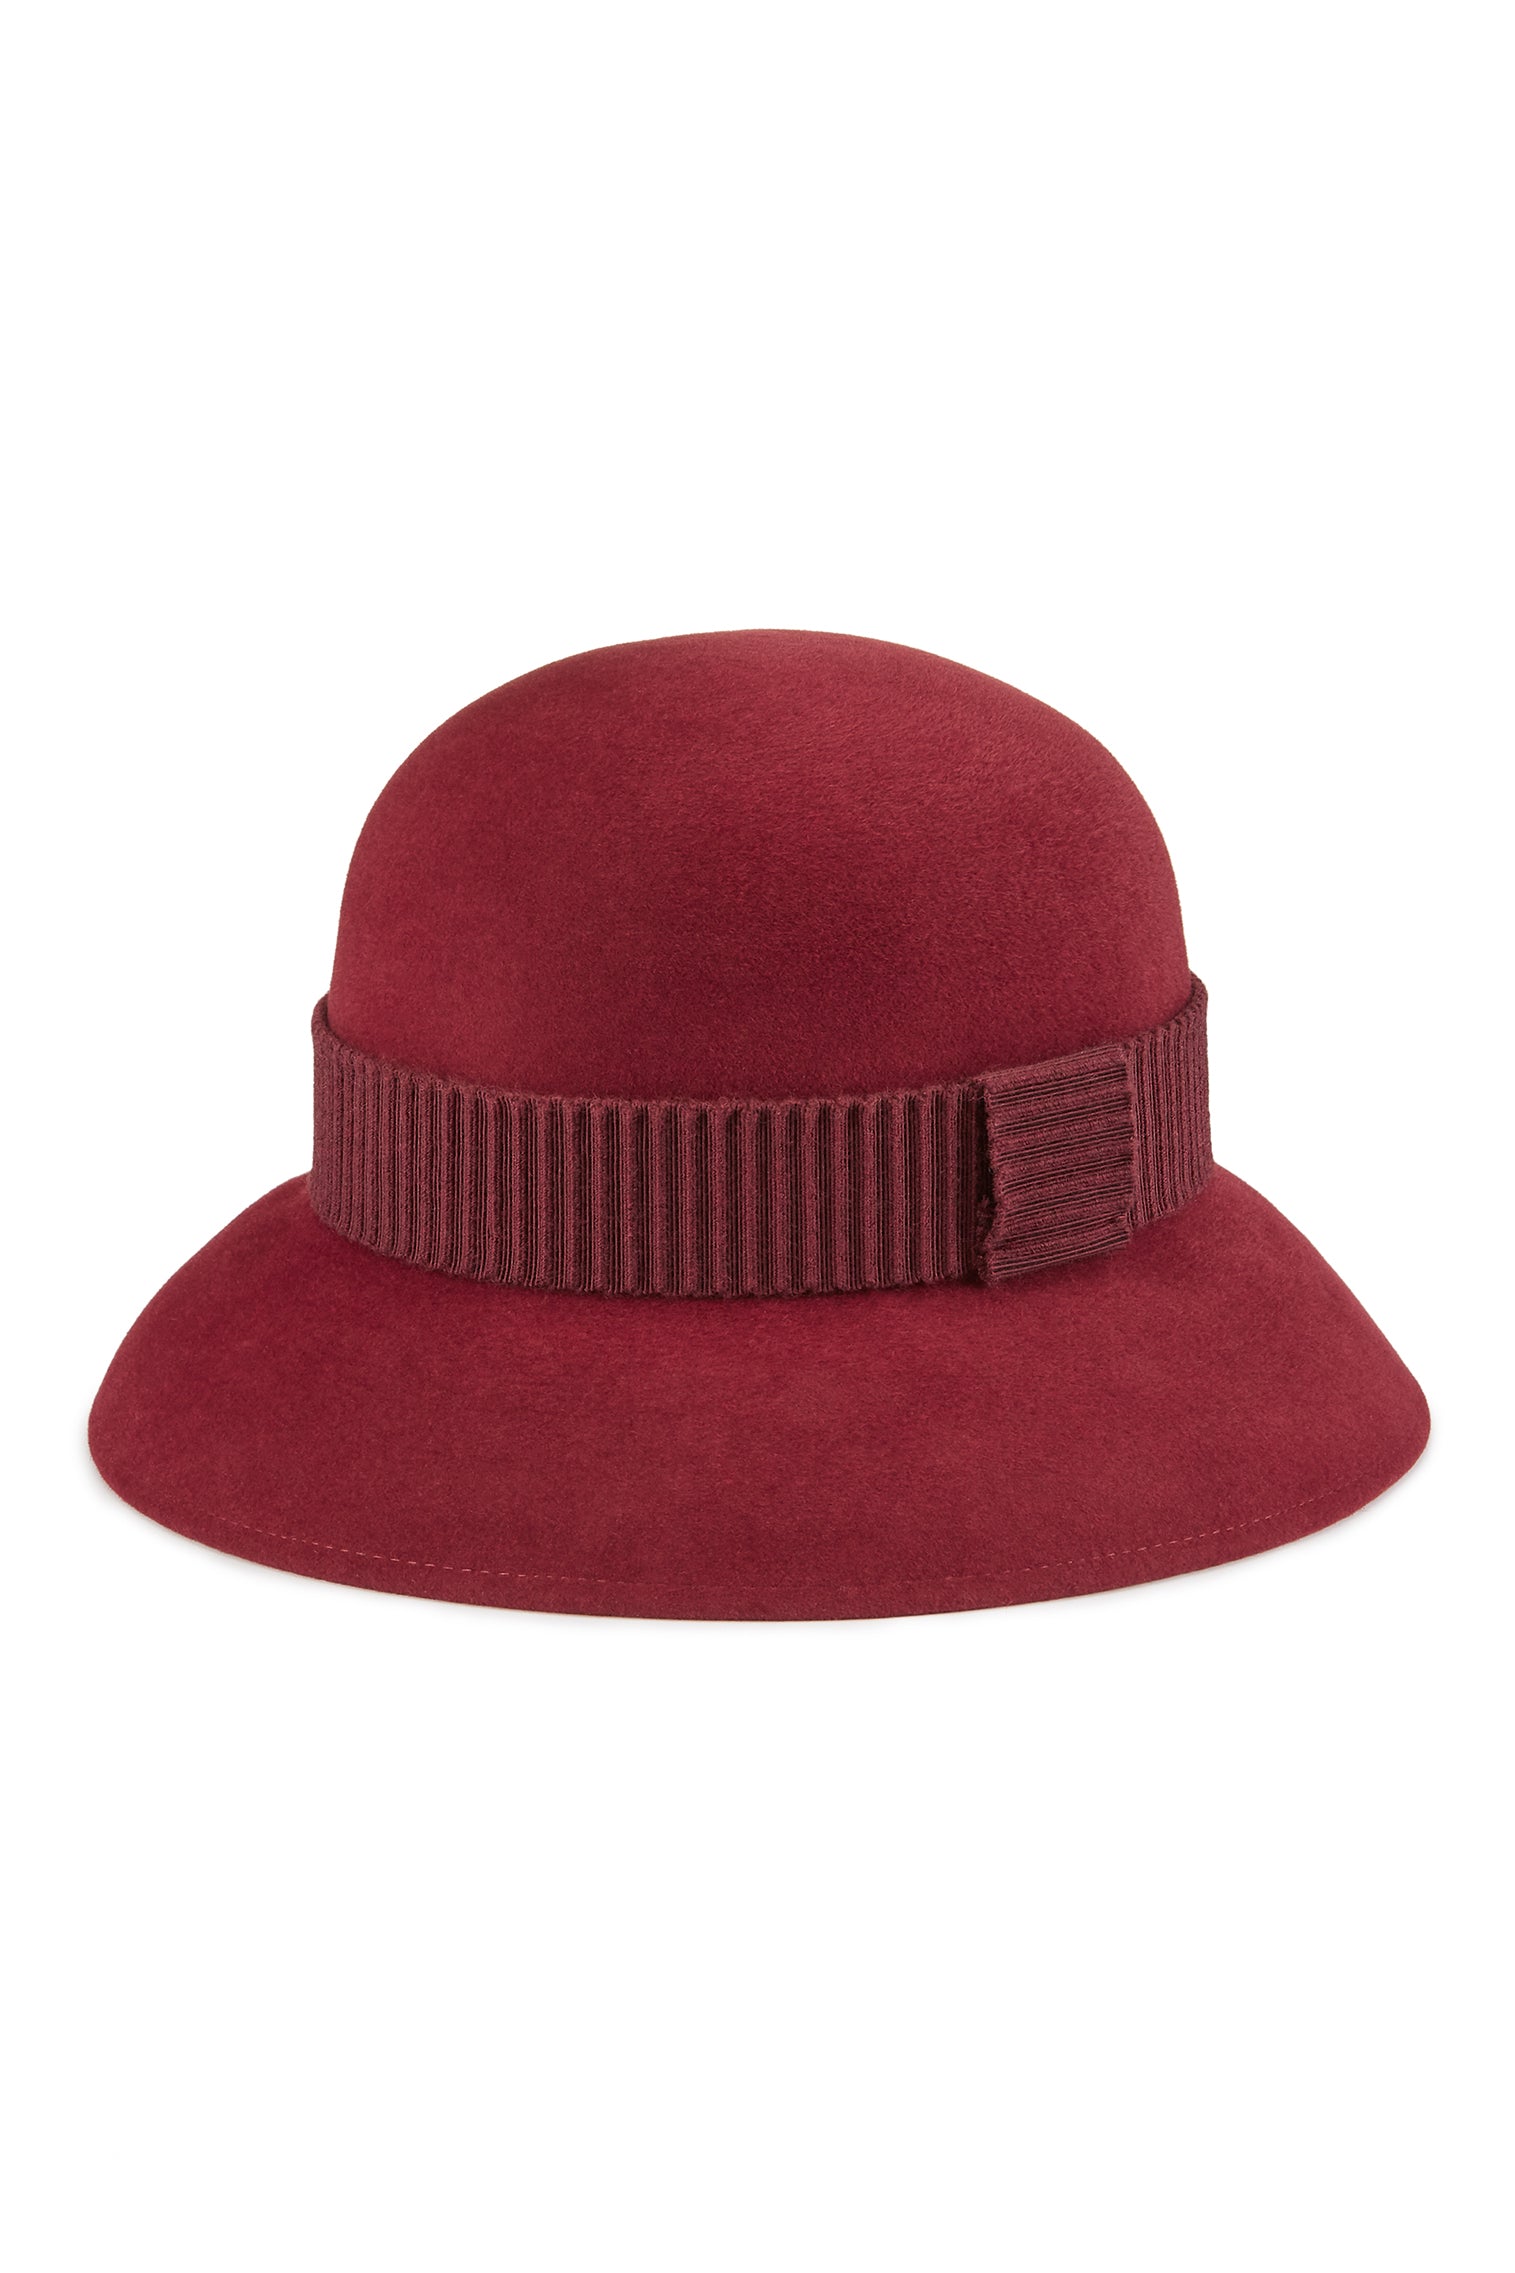 Hogarth Cloche - Women’s Hats - Lock & Co. Hatters London UK